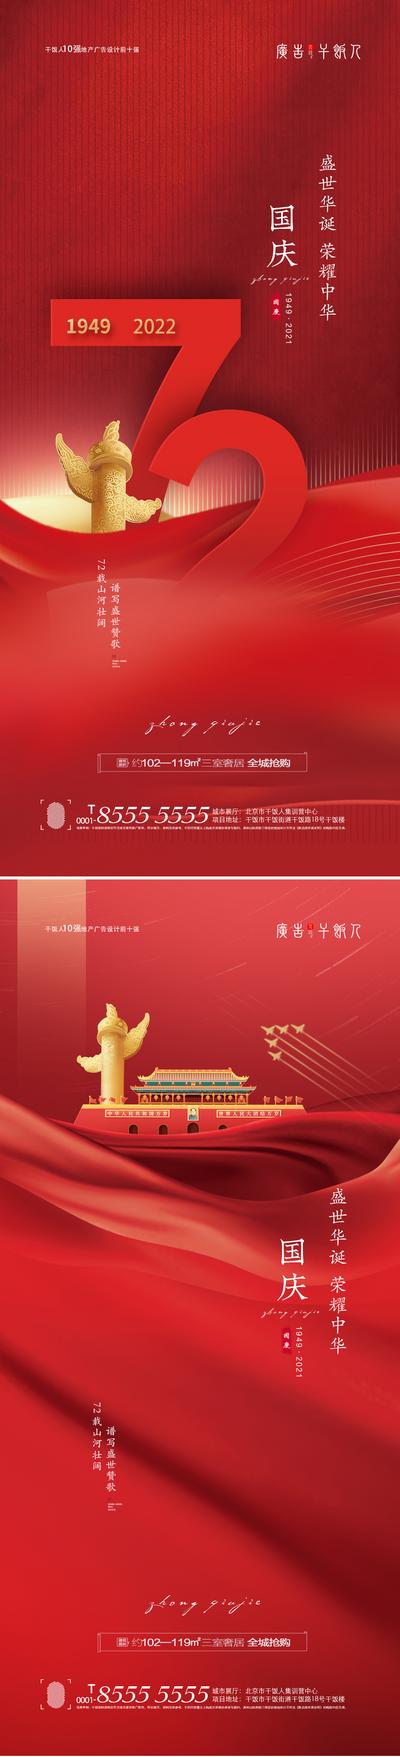 南门网 海报 地产 公历节日  国庆节  数字 创意 